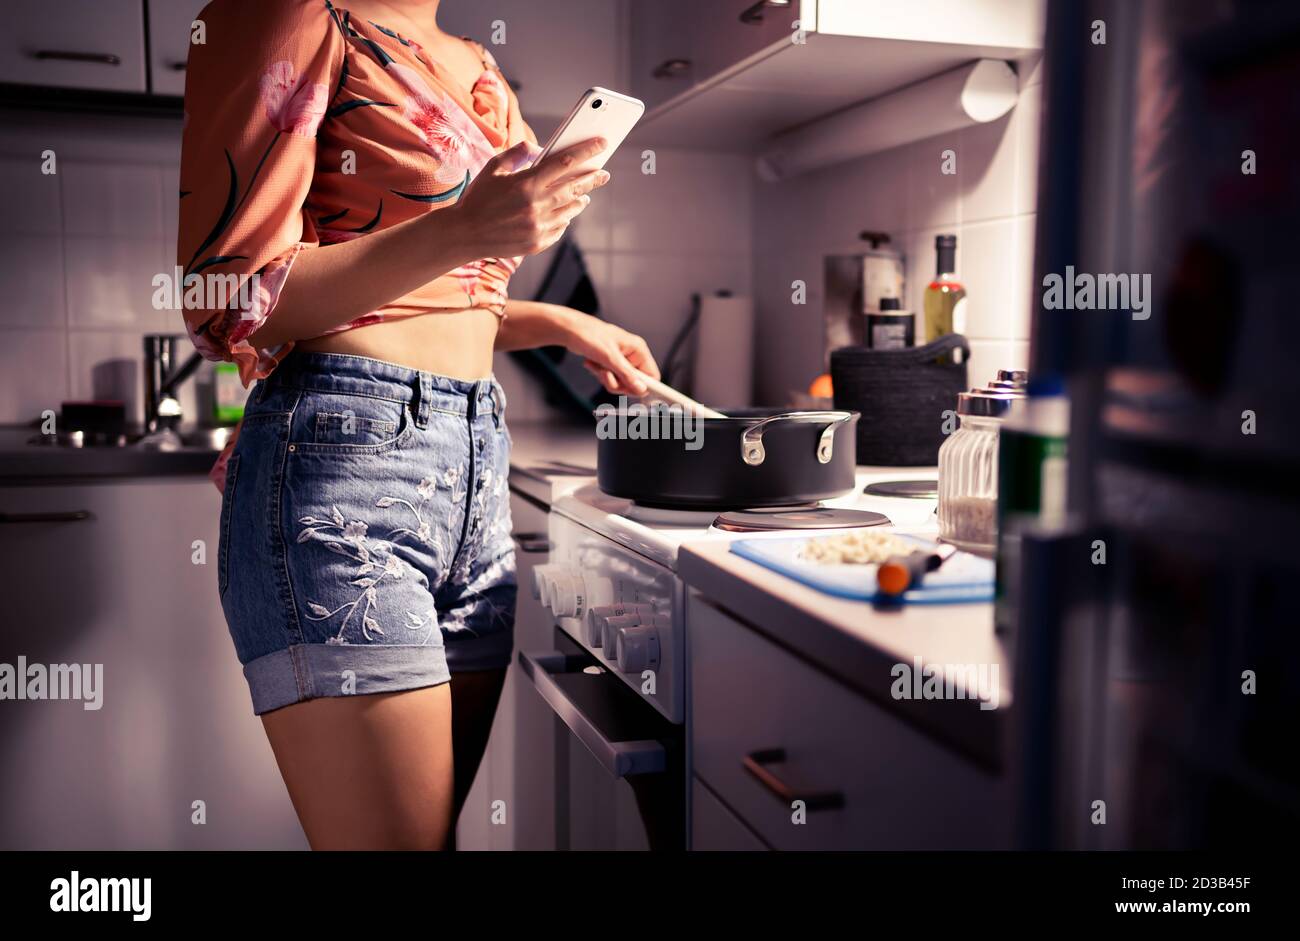 Junge Frau Kochen und mit Telefon. Person, die ein Abendessen vorbereitet und mit dem Smartphone SMS schreibt. Ernährung oder eine gesunde Lebensweise. Wohnküche in der Nacht. Stockfoto